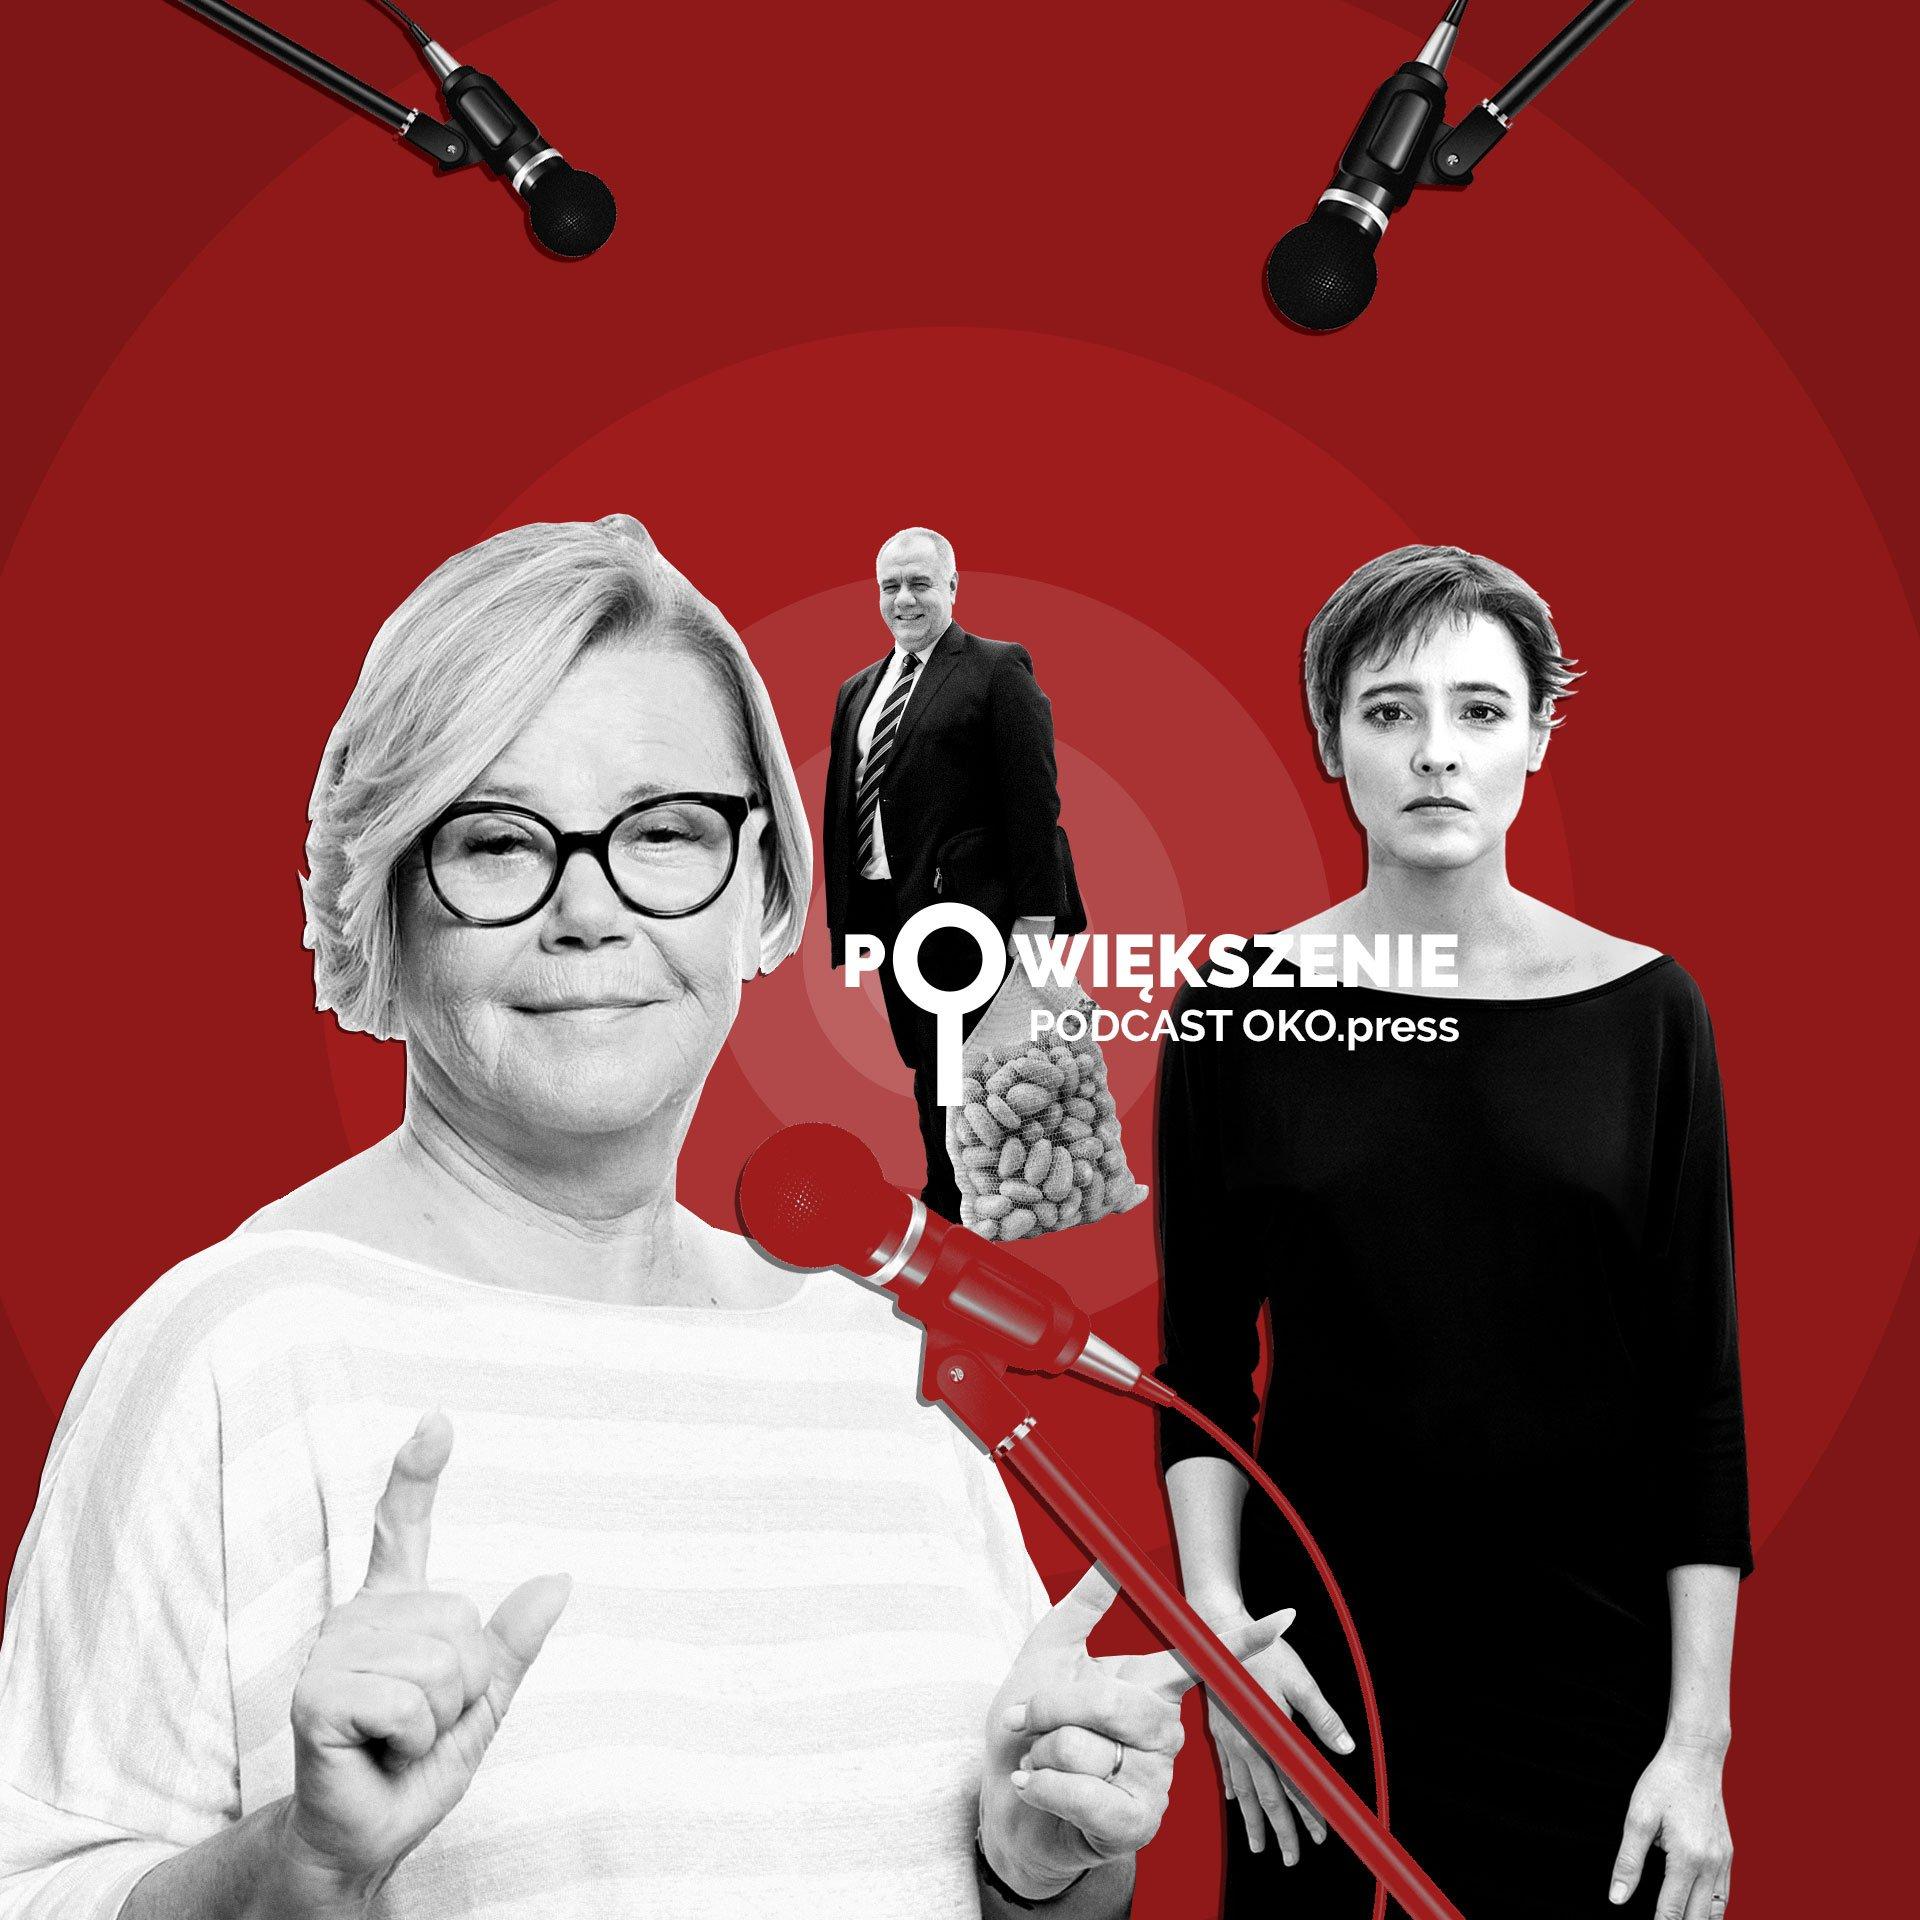 Powiększenie - podcast OKO.press: Joanna Solska o holdingu spożywczym Sasina